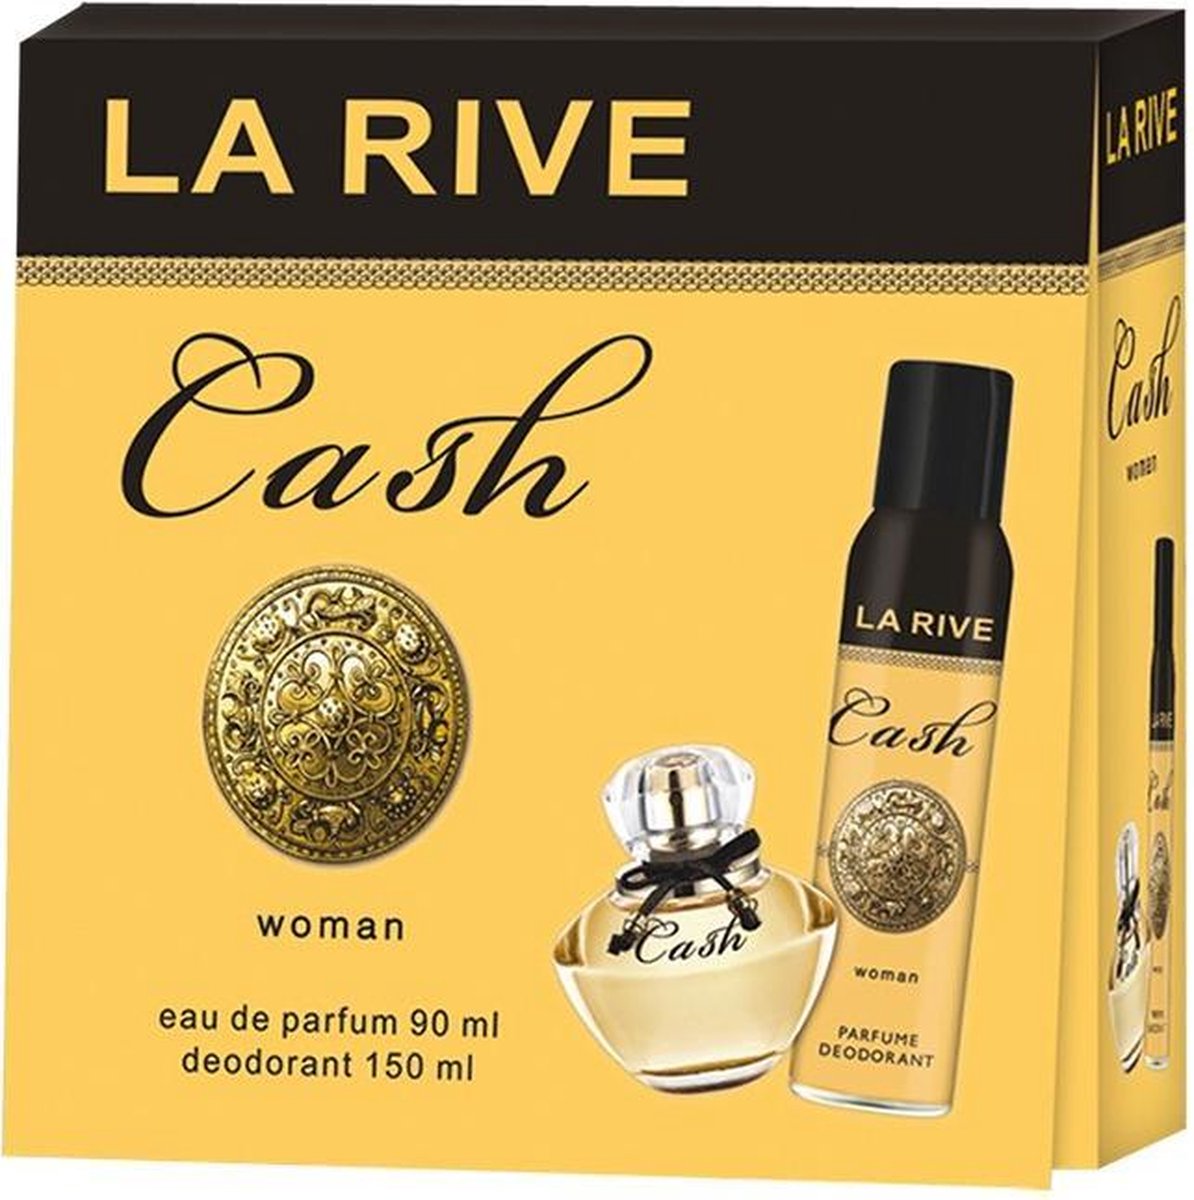 La Rive - Set Cash Woman - Geschenkset - Eau de parfum 90 ml + Deodorant 150 ml - La Rive